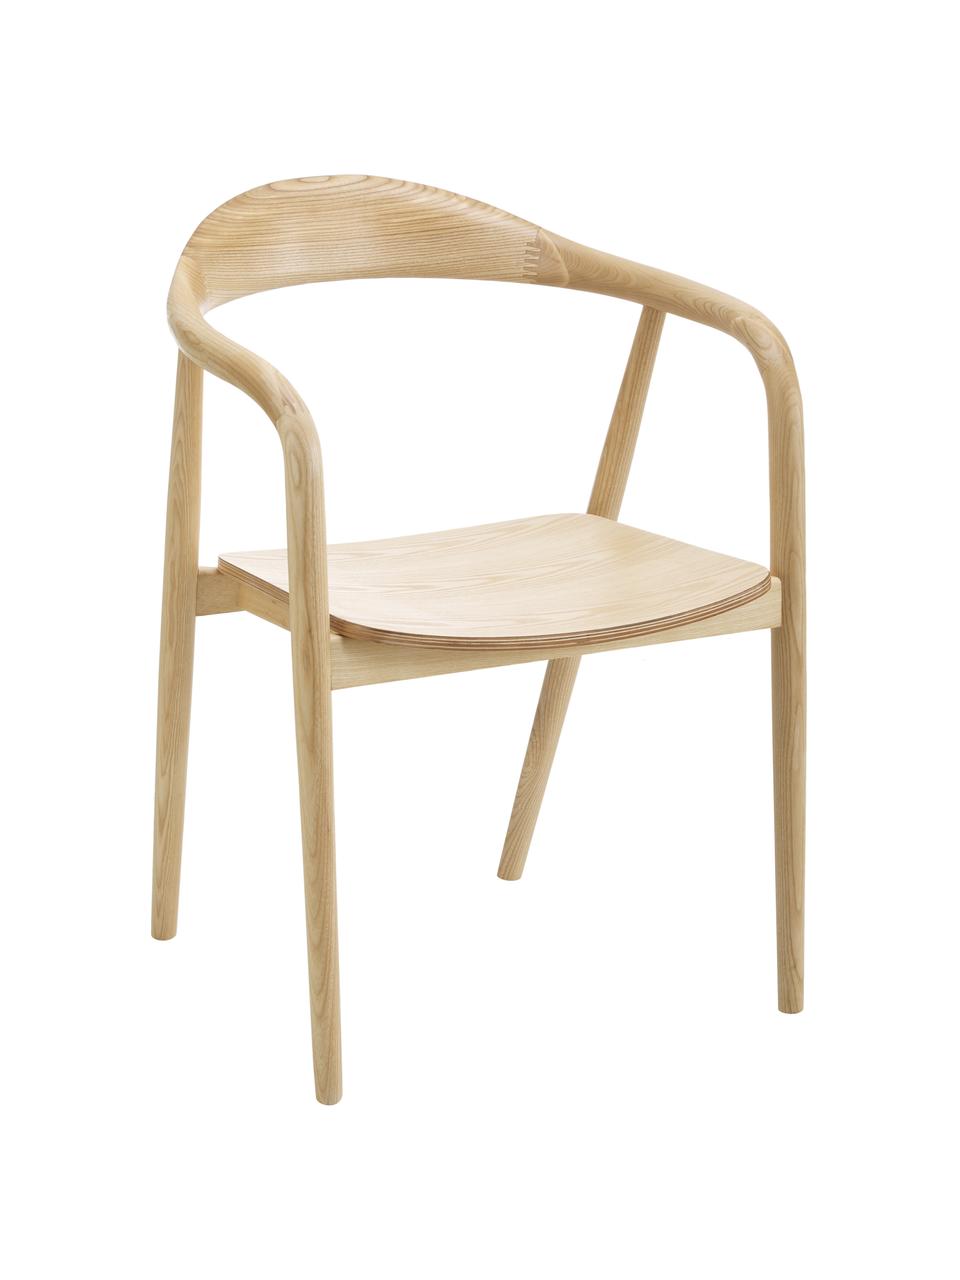 Krzesło z podłokietnikami z drewna Angelina, Stelaż: drewno jesionowe, sklejka, Drewno jesionowe, S 57 x W 80 cm